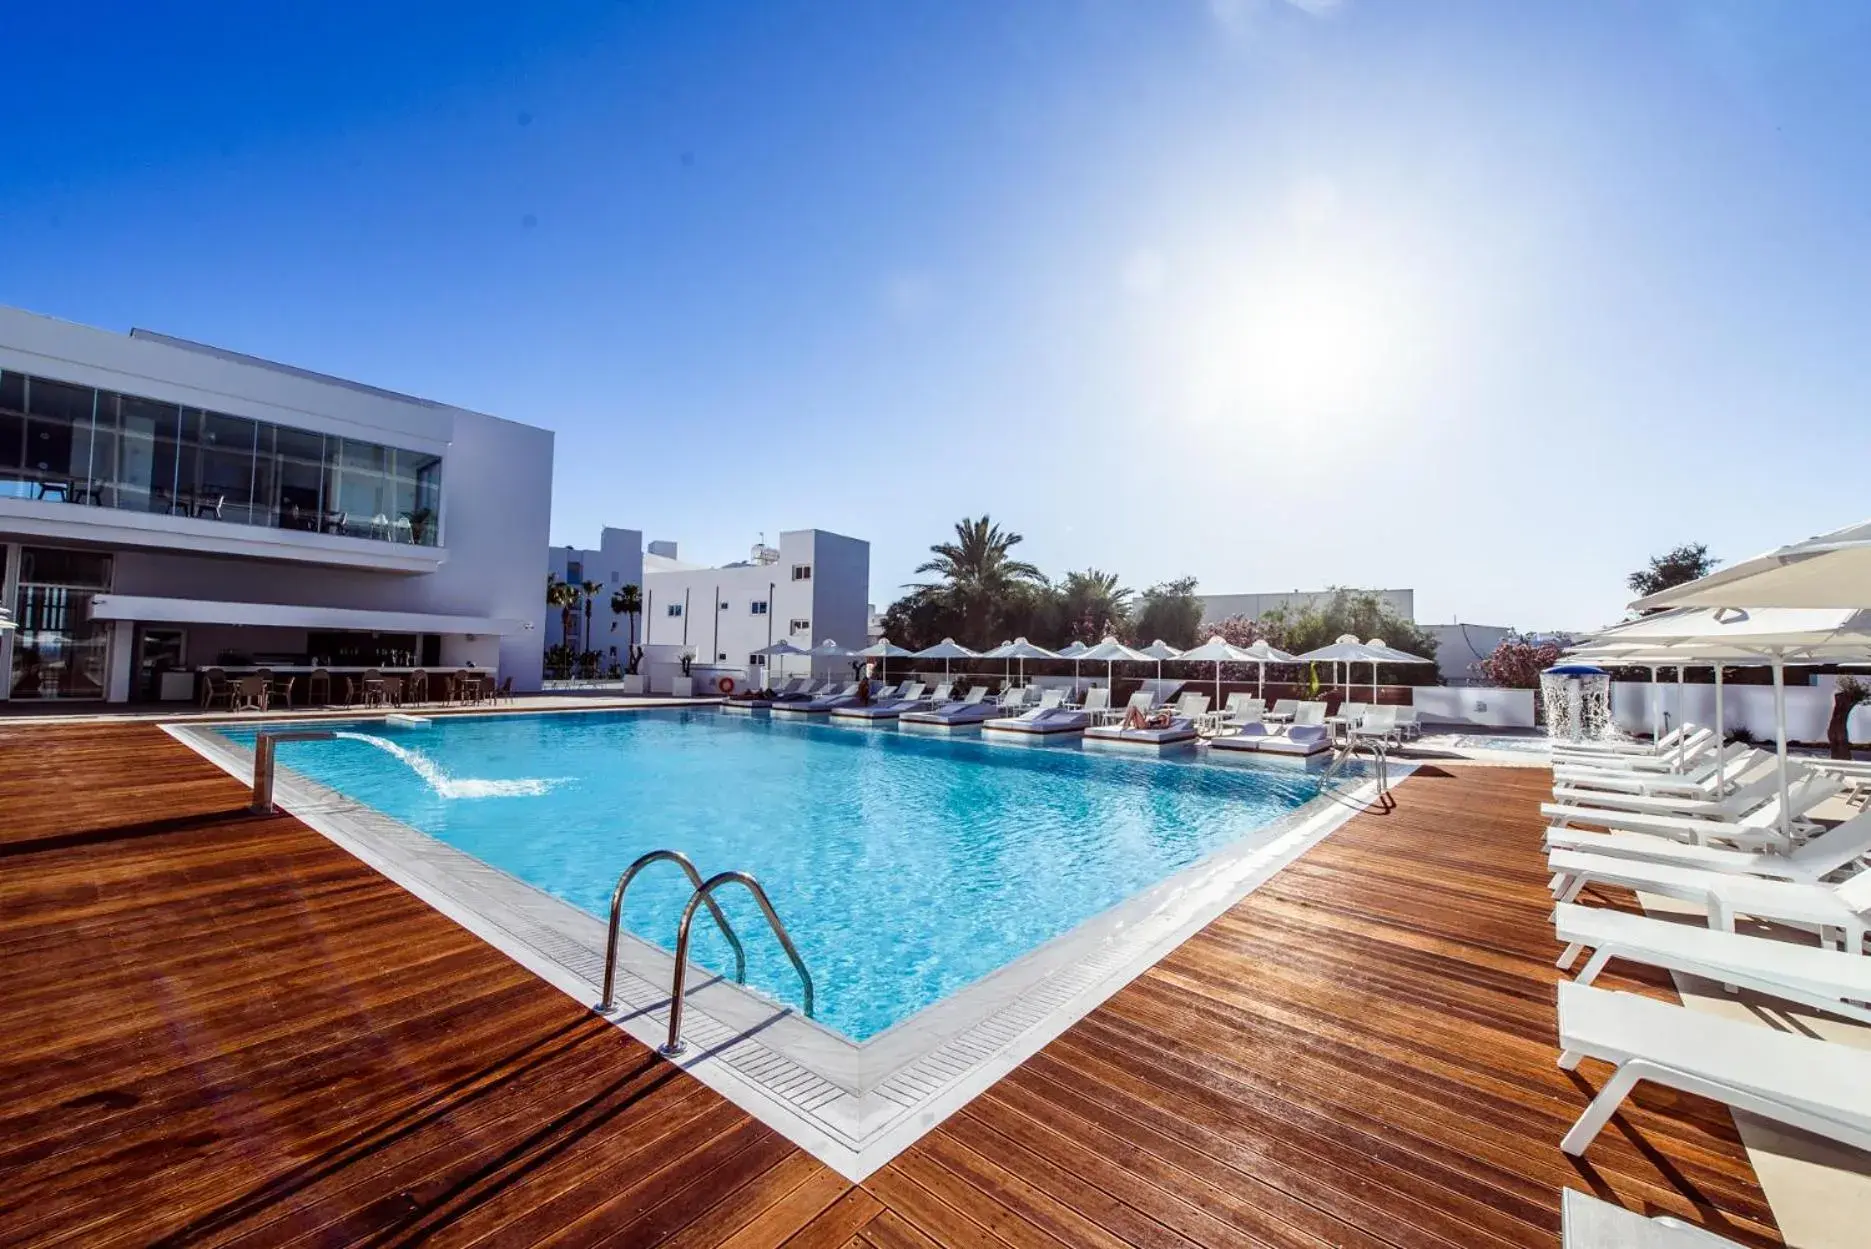 Swimming Pool in Eleana Hotel